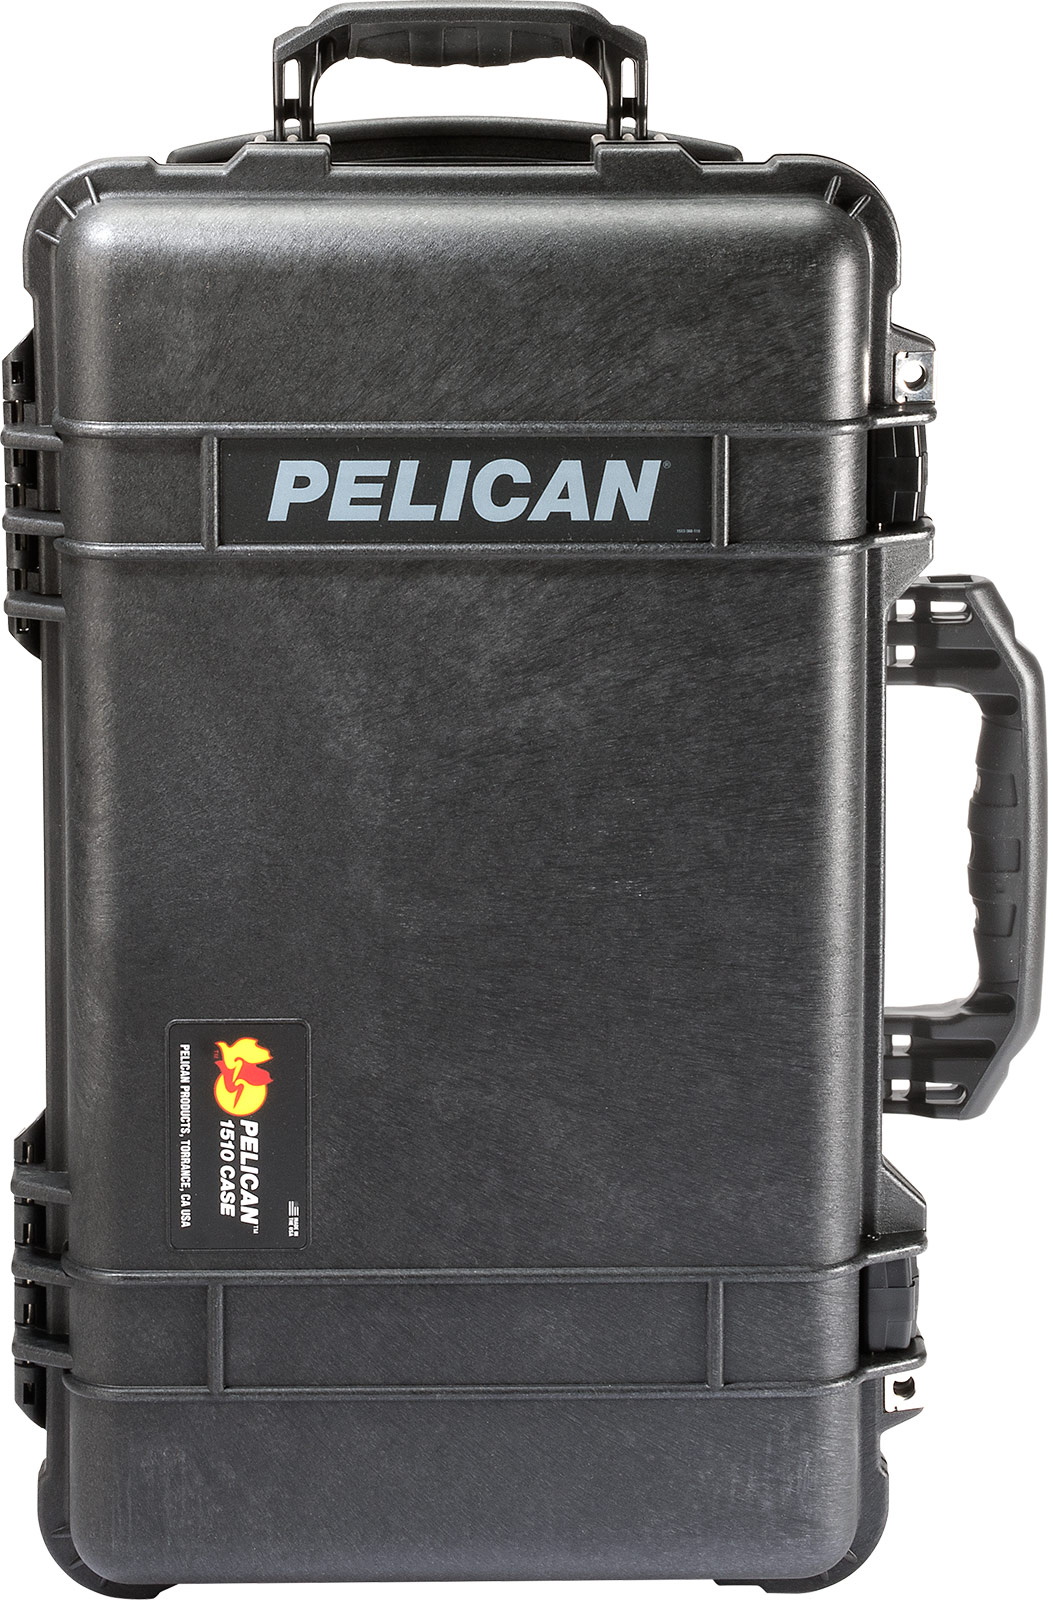 Pelican-015100-0009-110-